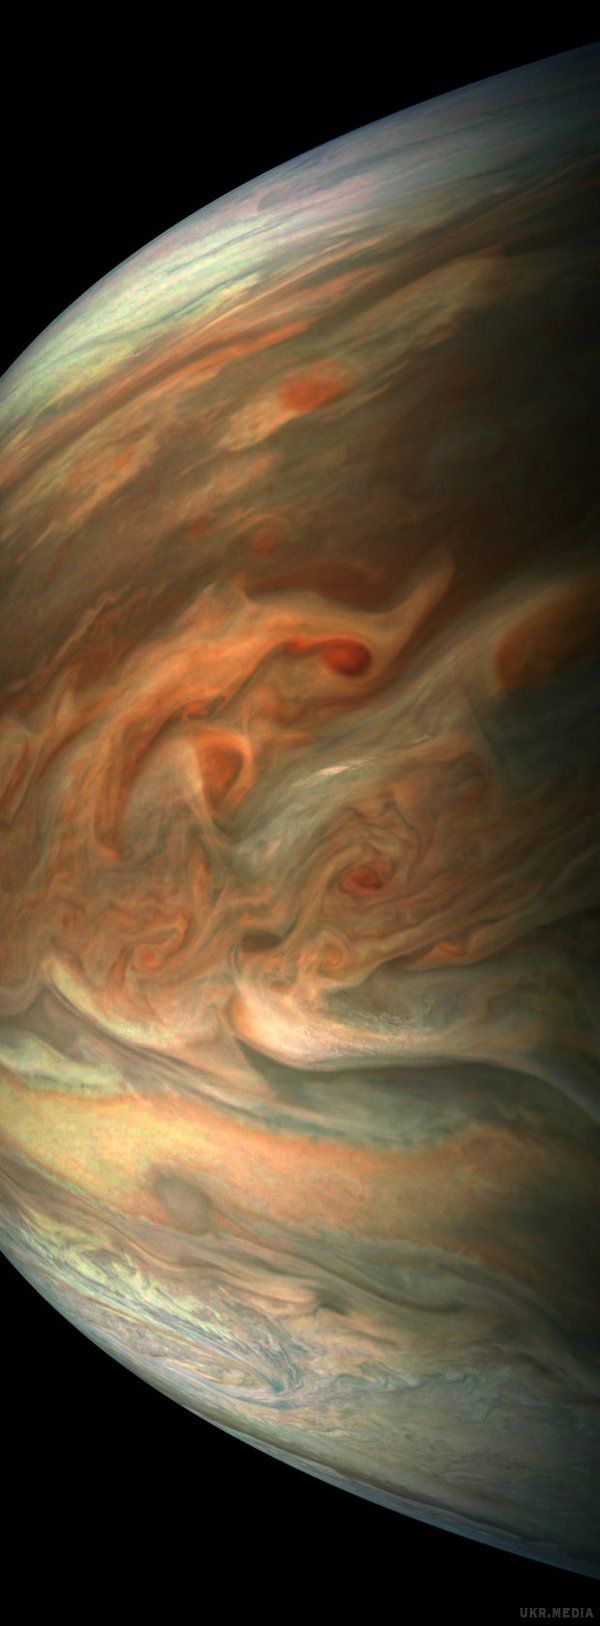 Фахівці показали вражаюче зображення Юпітера. Це унікальне фото було зроблено 1 вересня космічним апаратом NASA "Юнона"